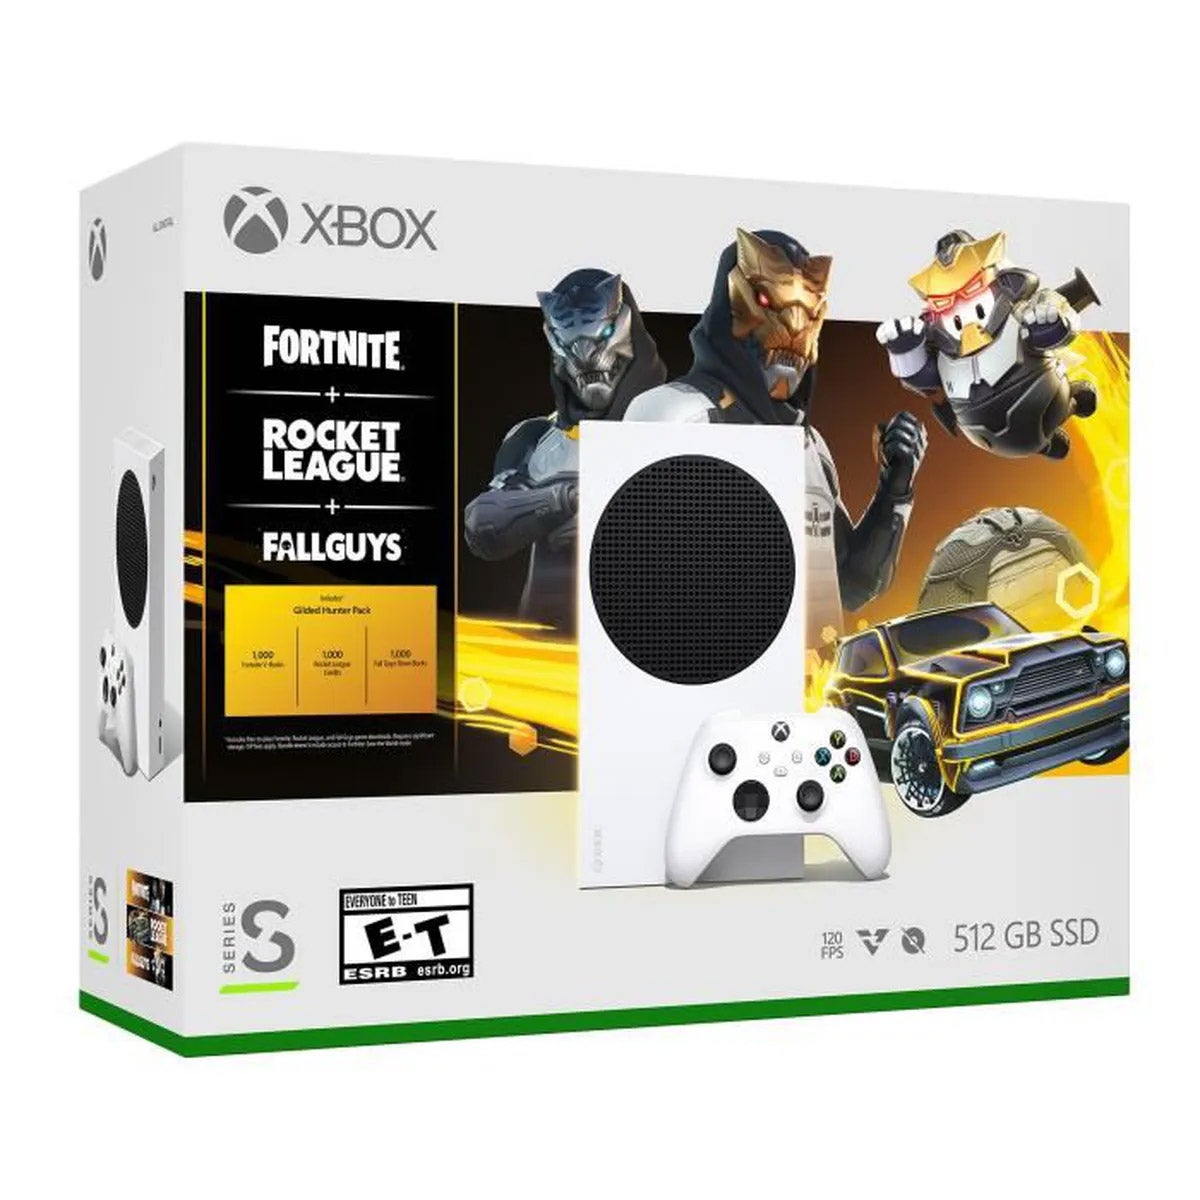 Imagem para Microsoft lança novo pack da Xbox Series S com extras para Fornite, Rocket League e Fall Guys